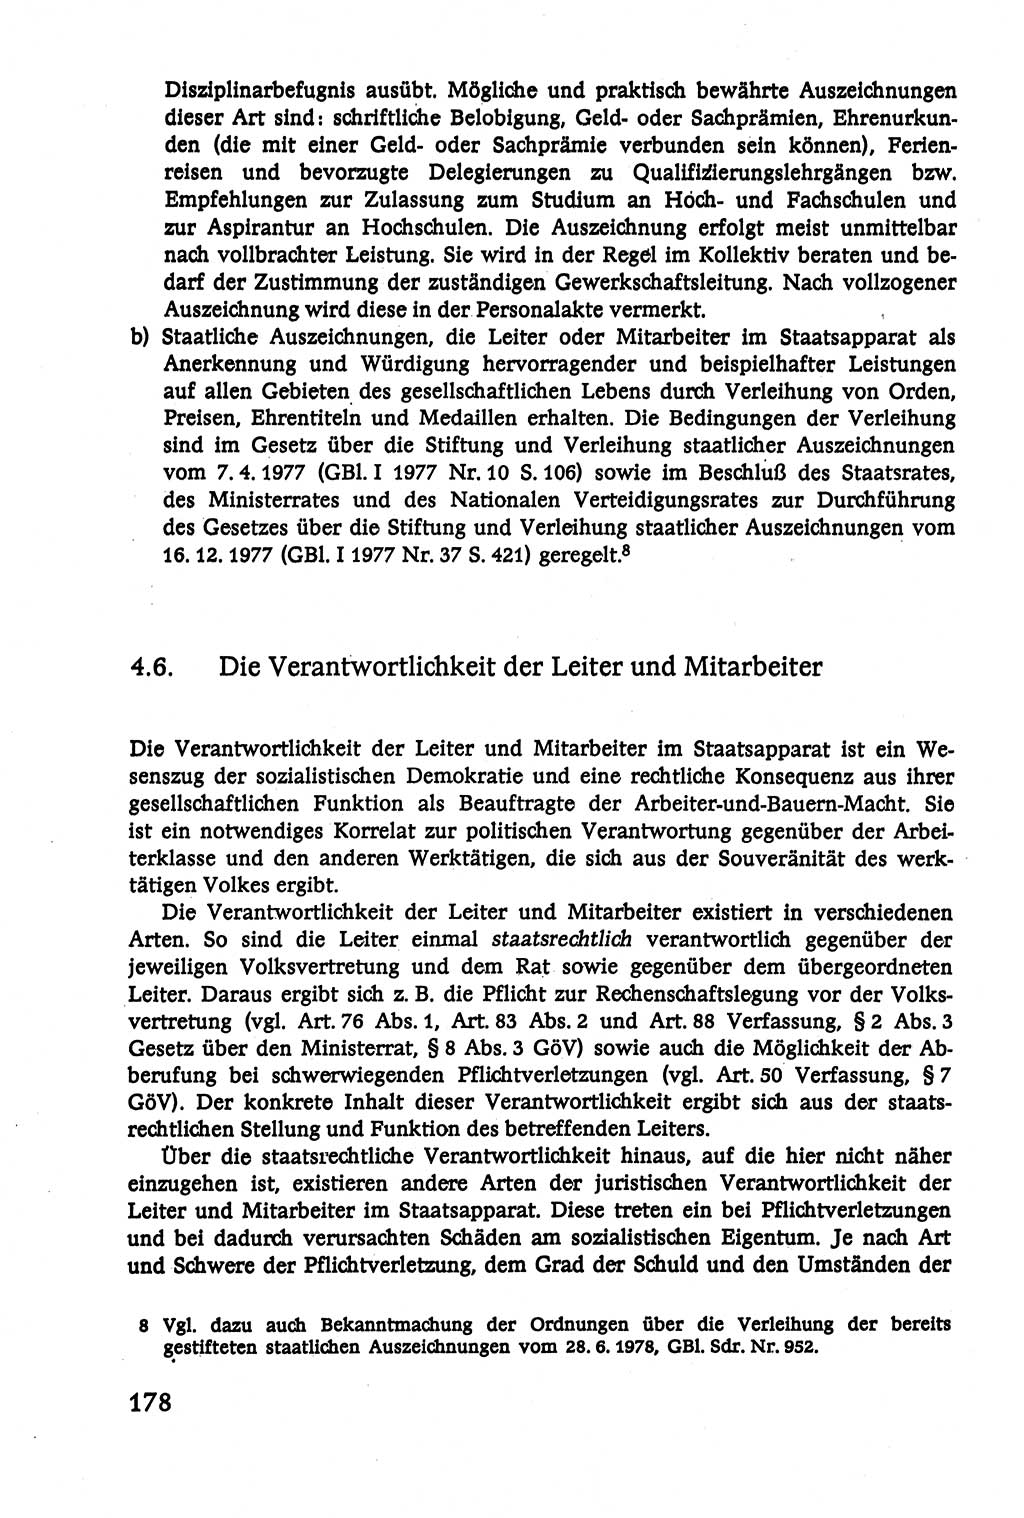 Verwaltungsrecht [Deutsche Demokratische Republik (DDR)], Lehrbuch 1979, Seite 178 (Verw.-R. DDR Lb. 1979, S. 178)